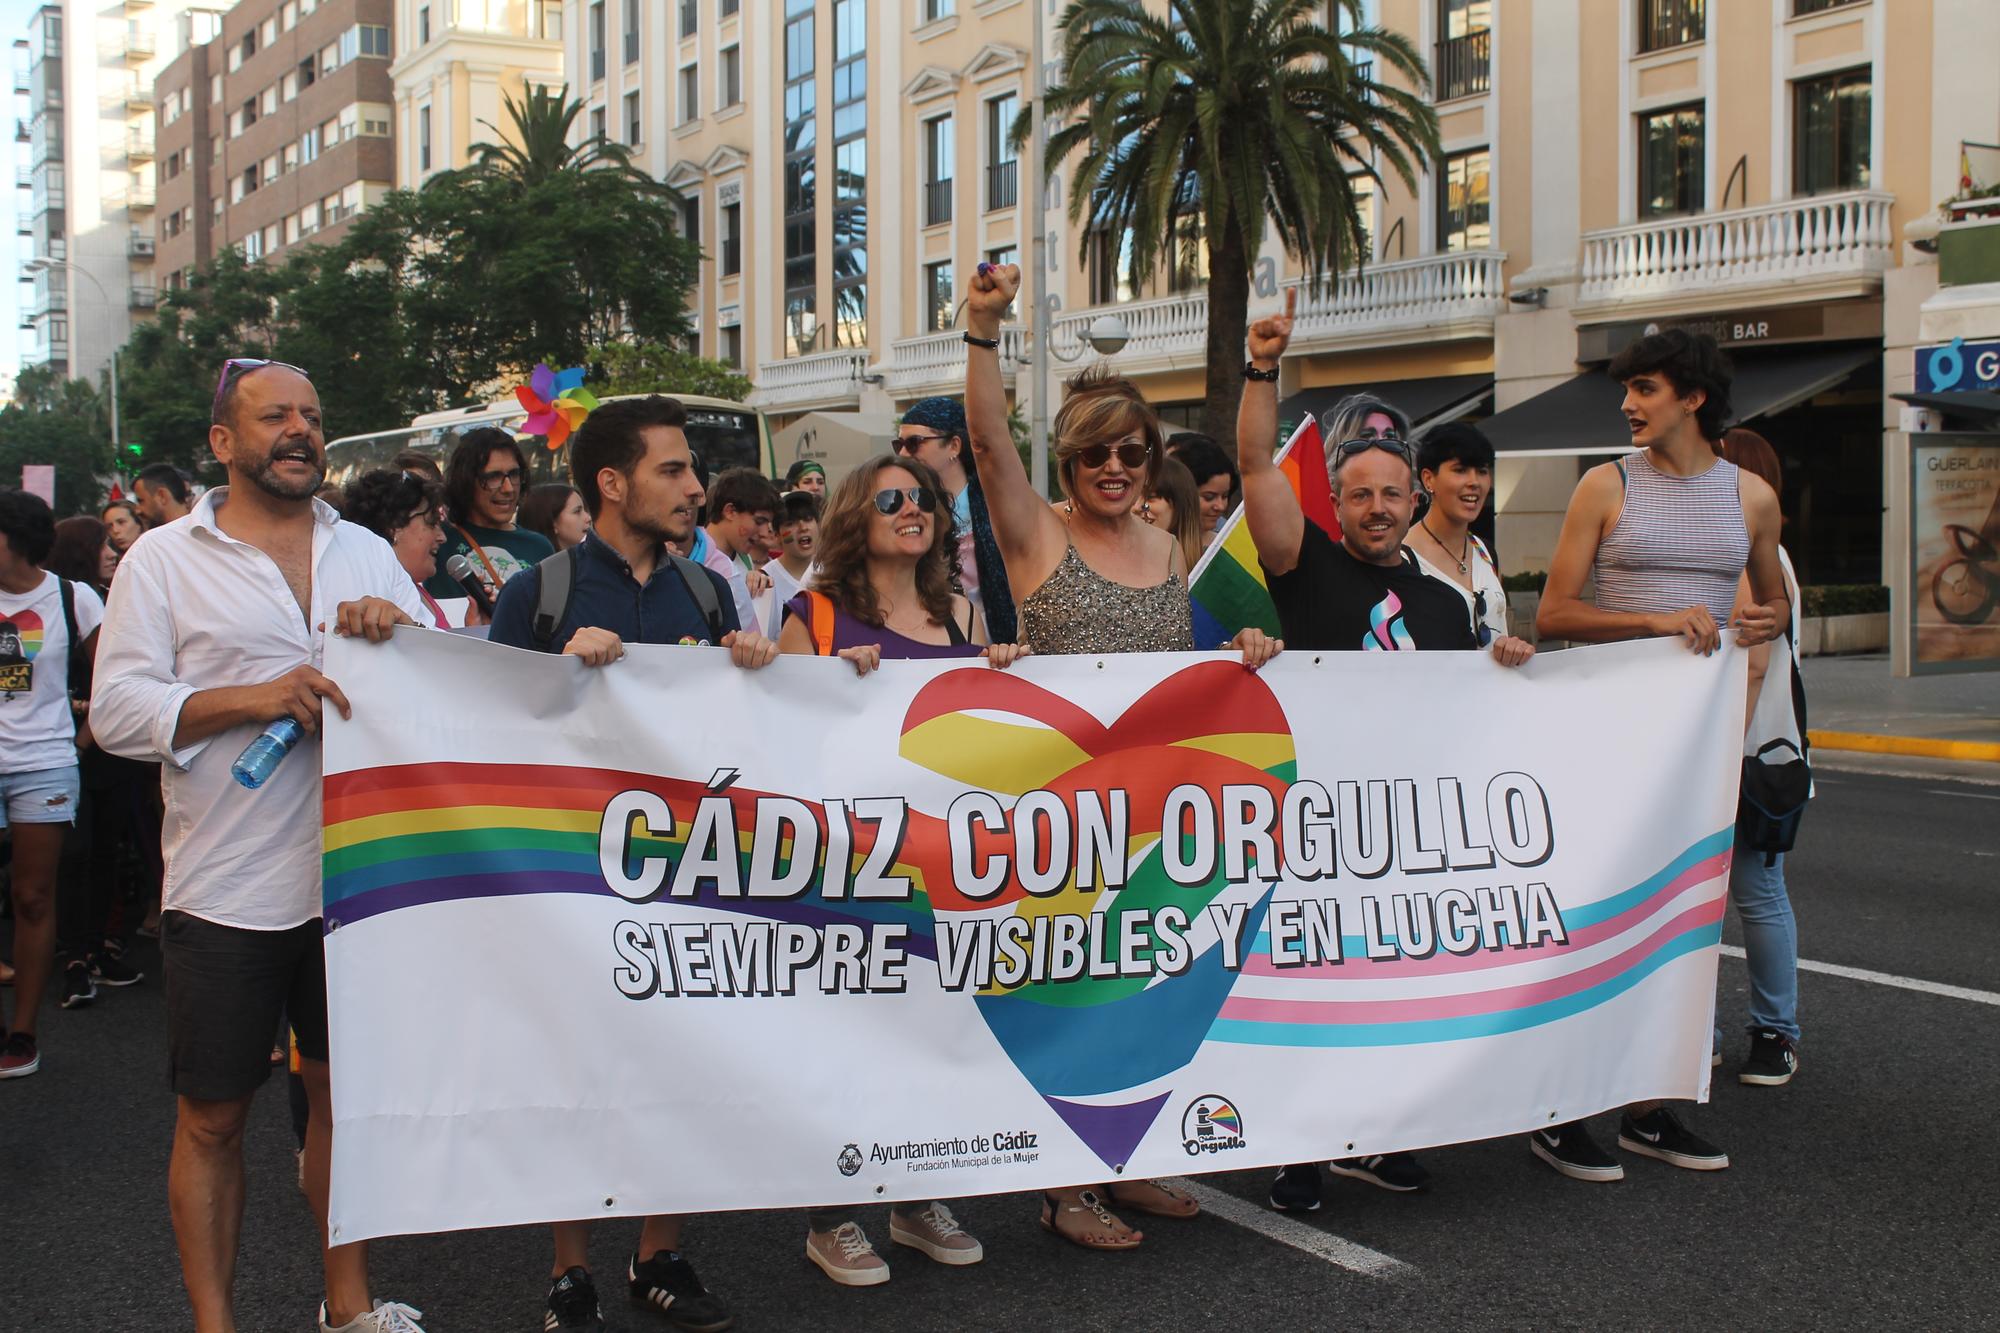 Cambrolle Orgullo Cádiz